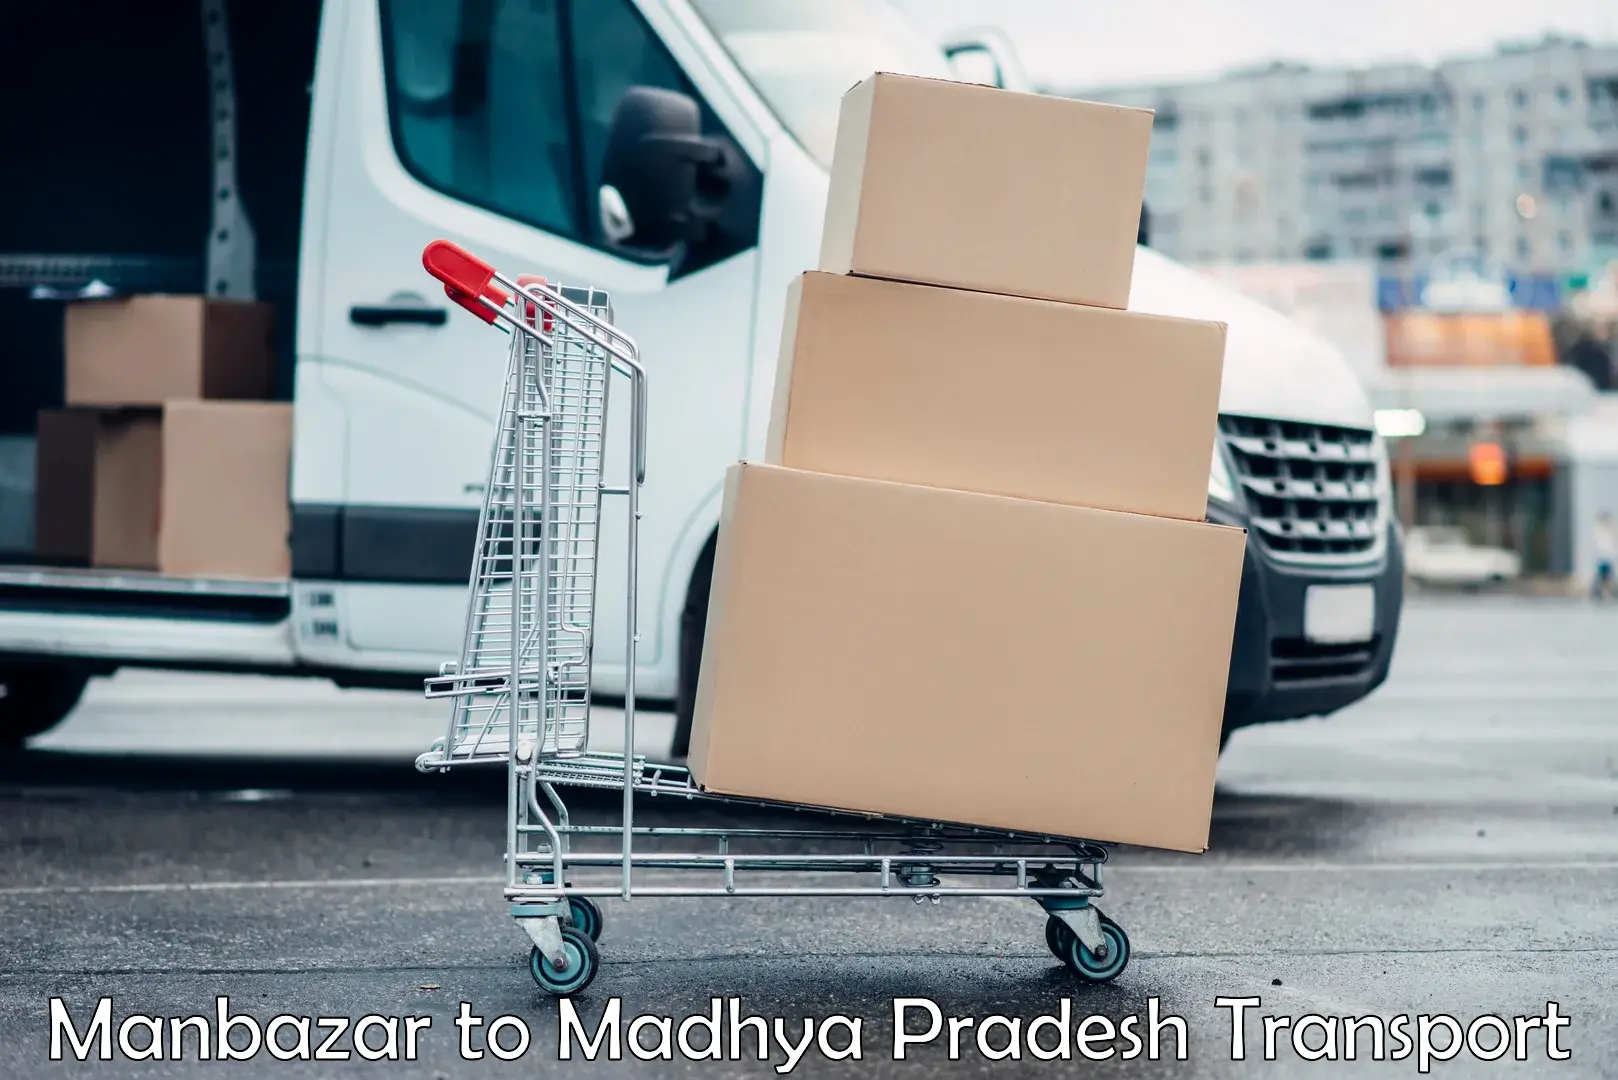 Vehicle transport services Manbazar to Shahgarh